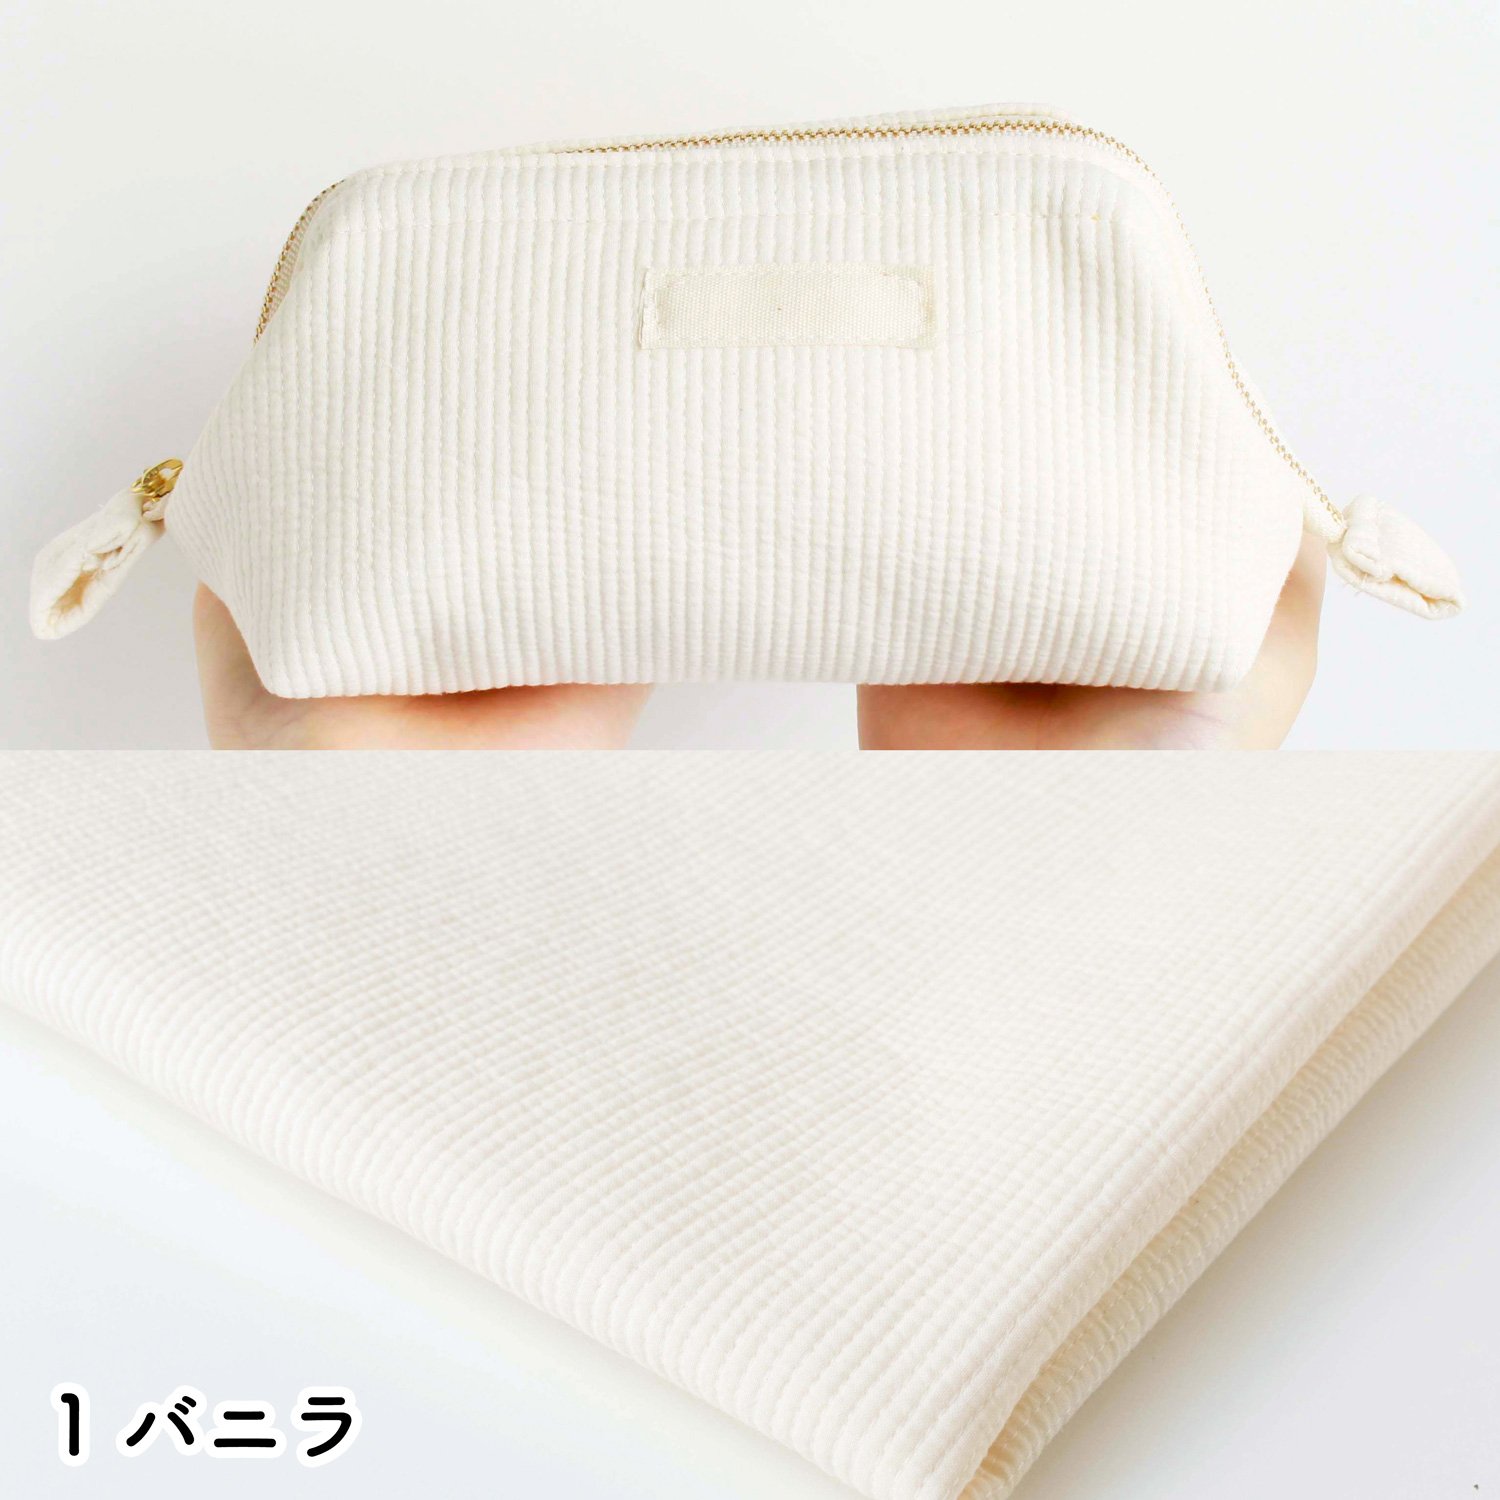 ■NBY303R nubi ヌビ 韓国伝統キルティング生地 巾3mmサイズ 原反約8m乱巻 (巻) 9